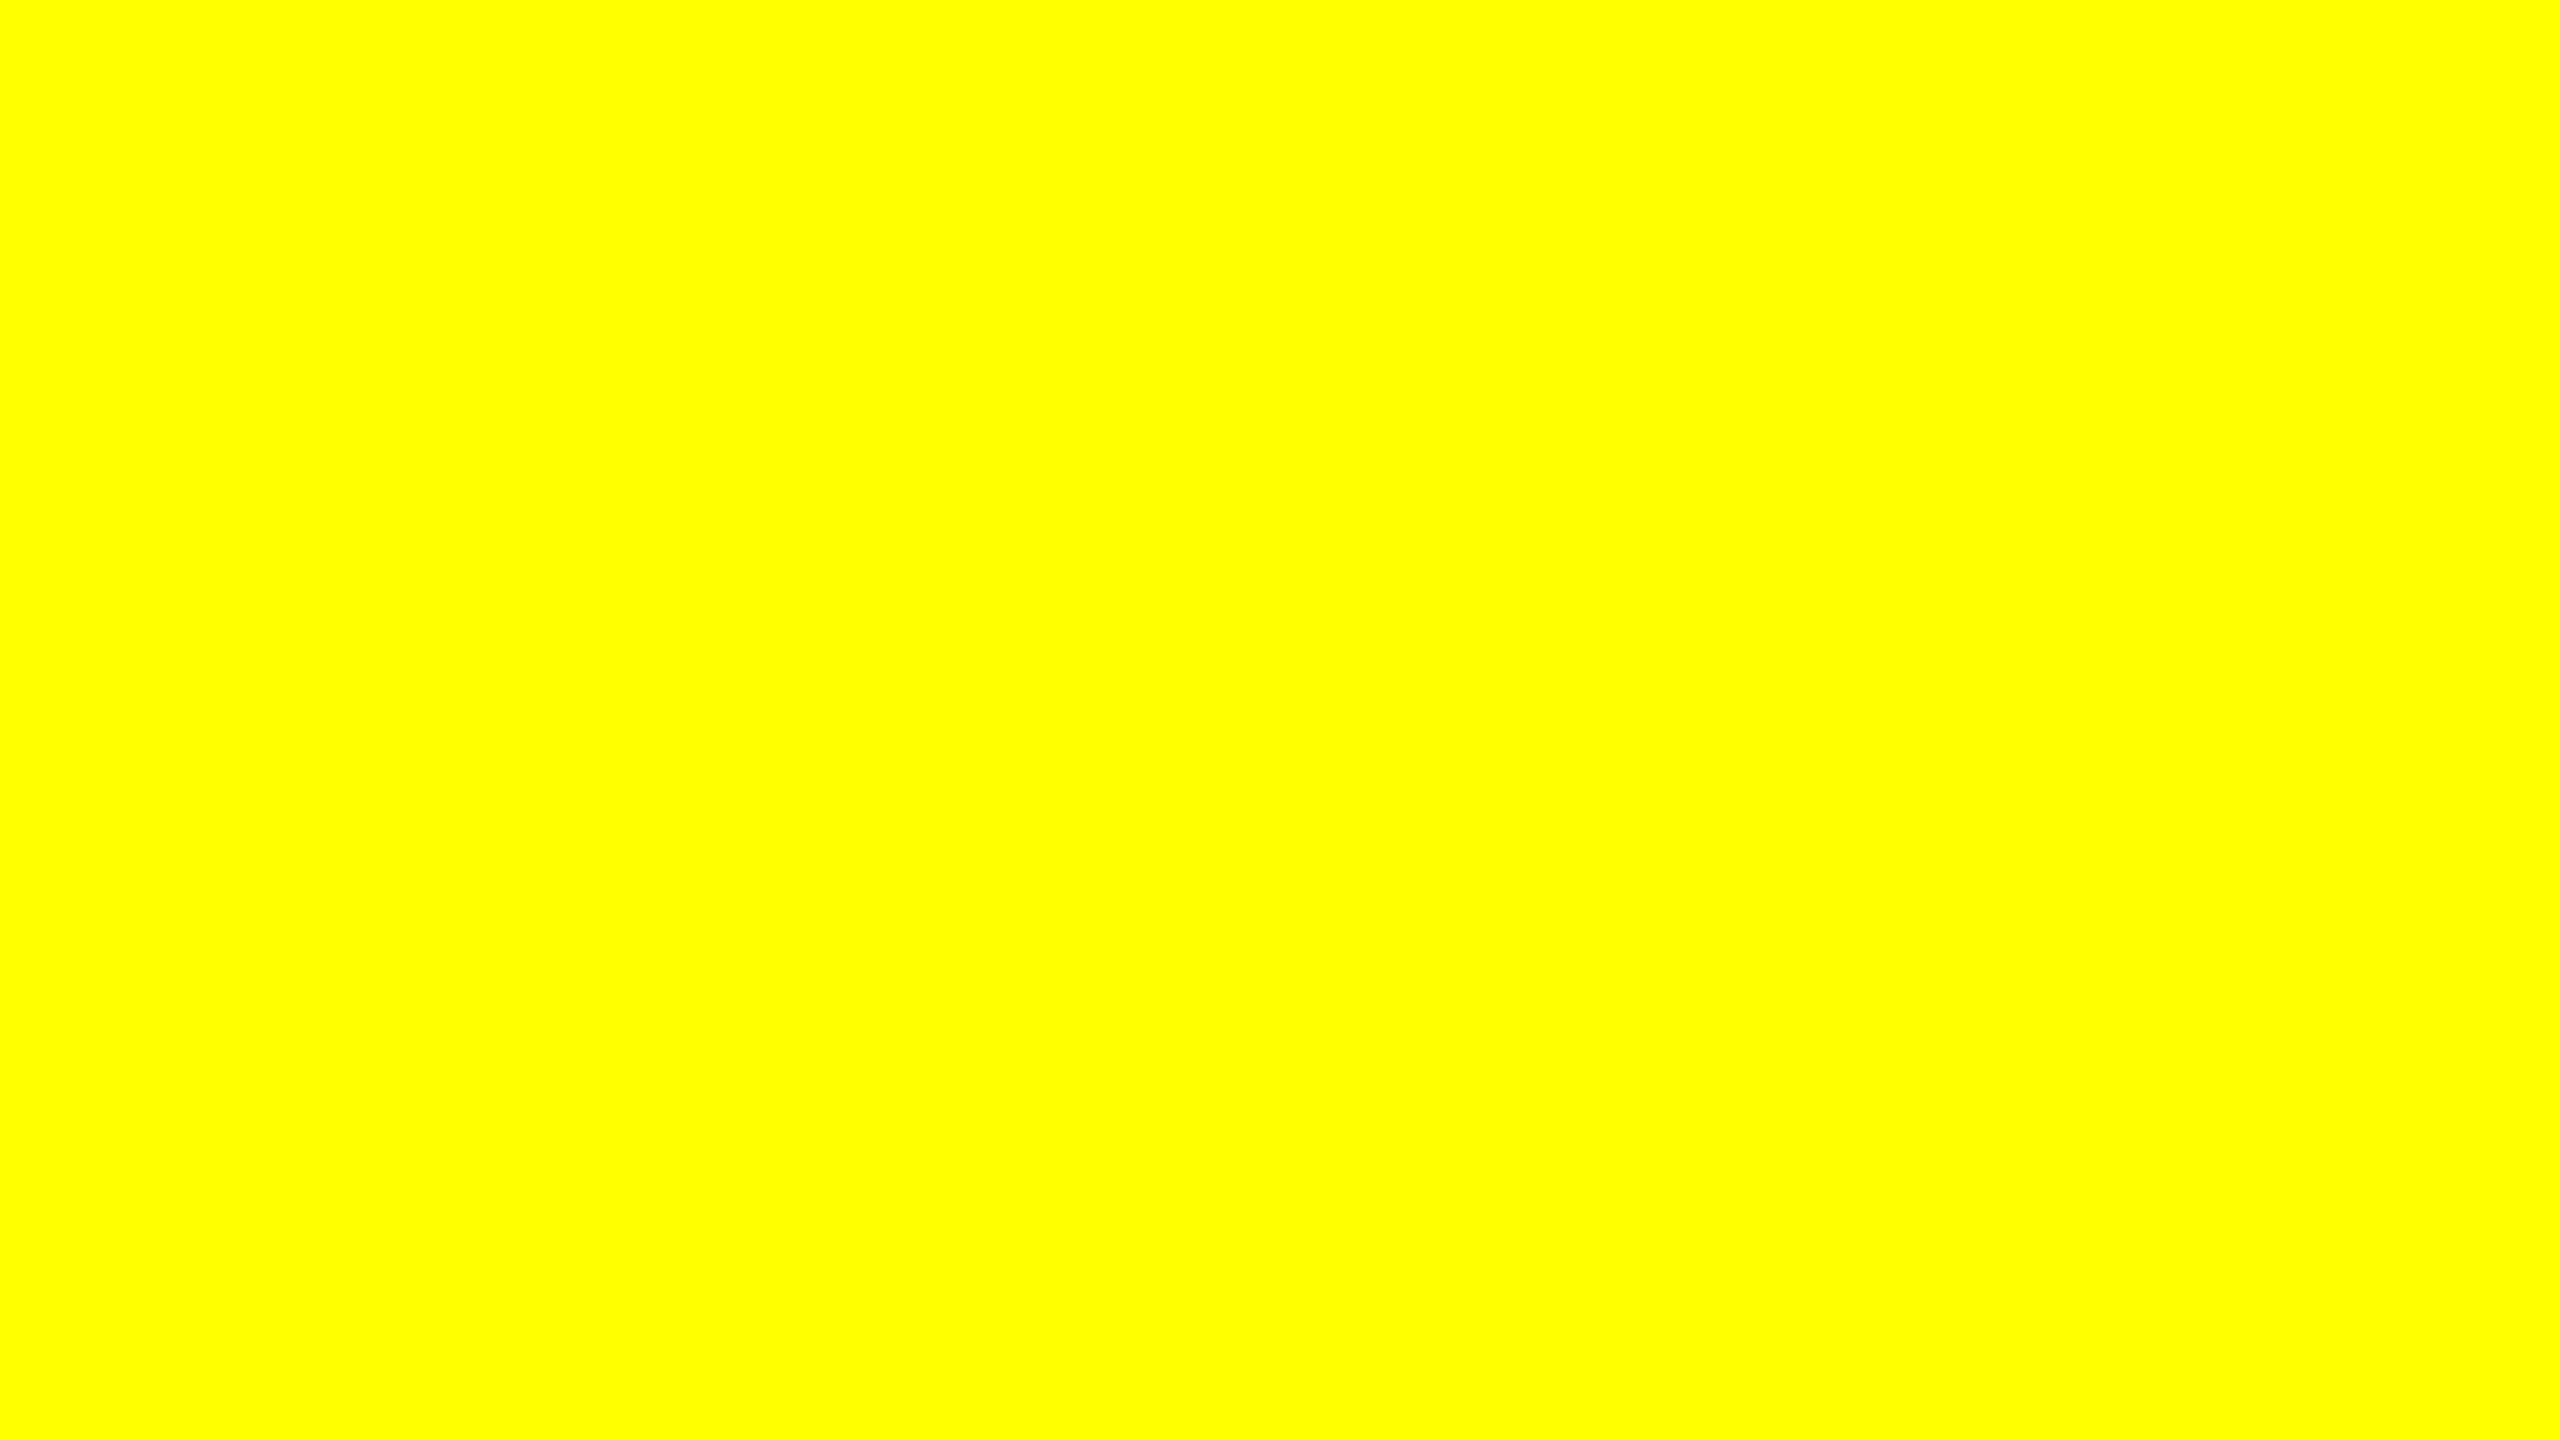 2560x1440 Solid Yellow Wallpaper - WallpaperSafari